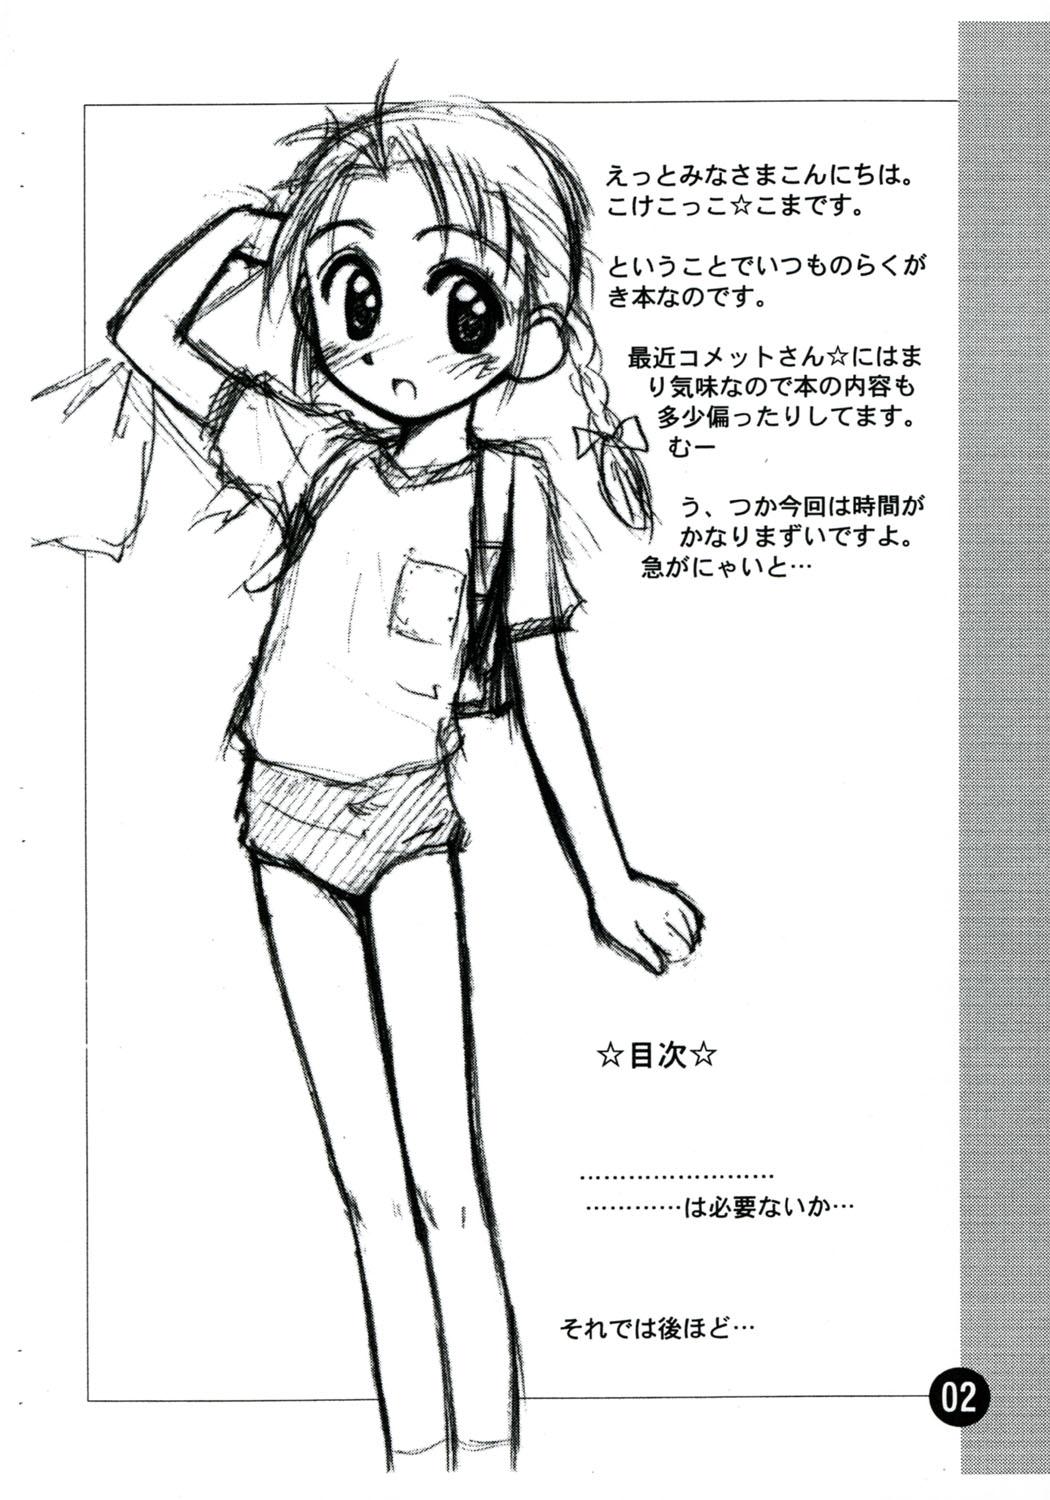 Dirty Talk Rakugaki File 4 Yon - Cosmic baton girl comet-san Puta - Page 2